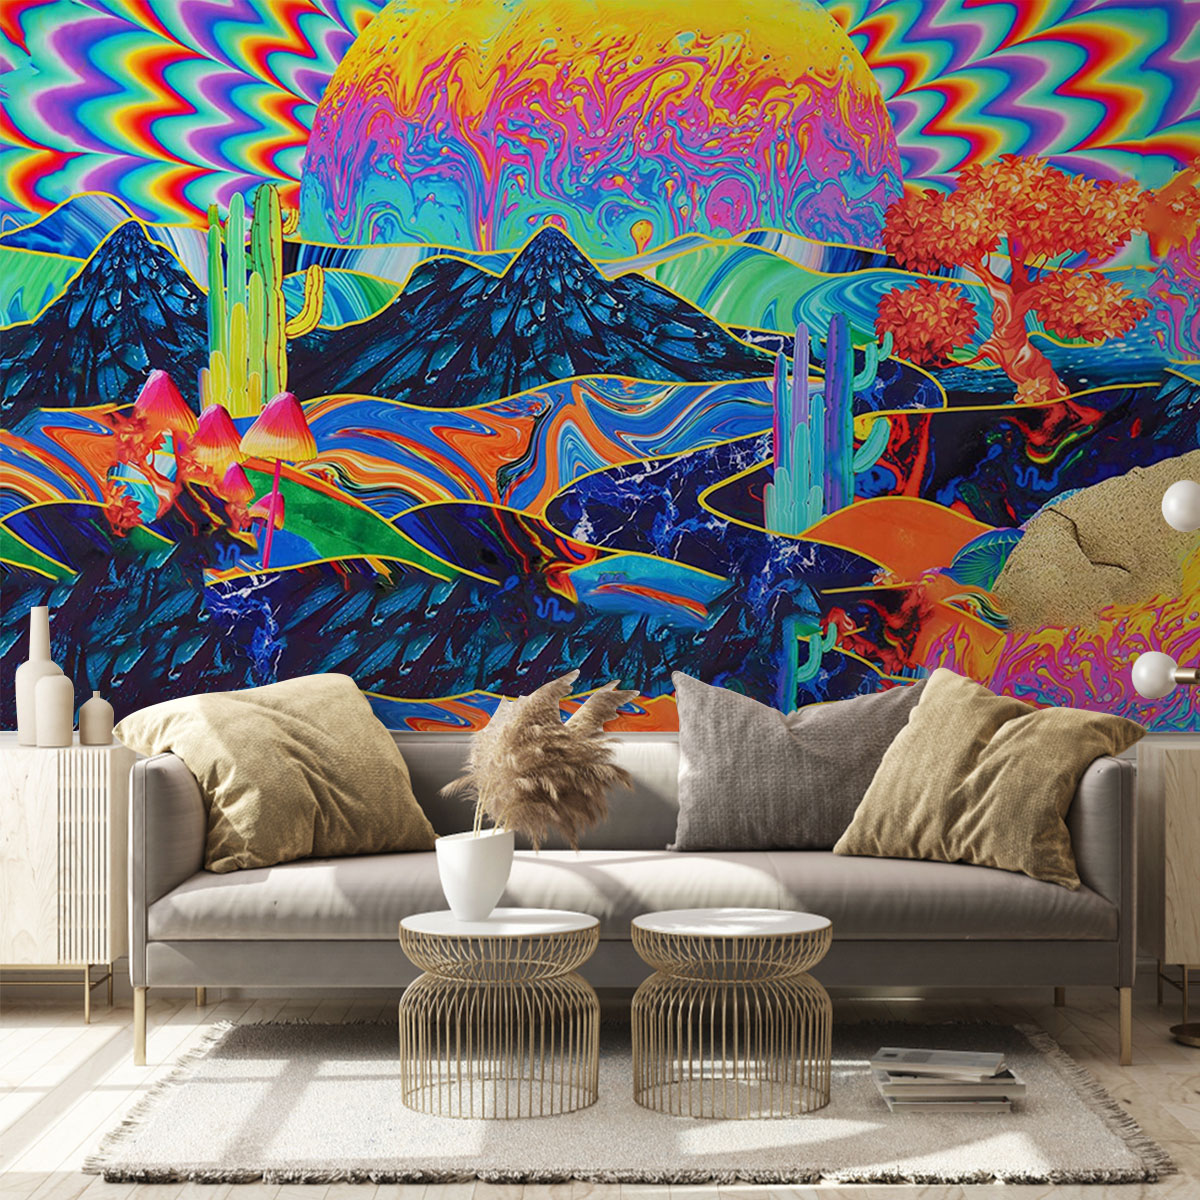 Hippie World Wall Mural_2_1